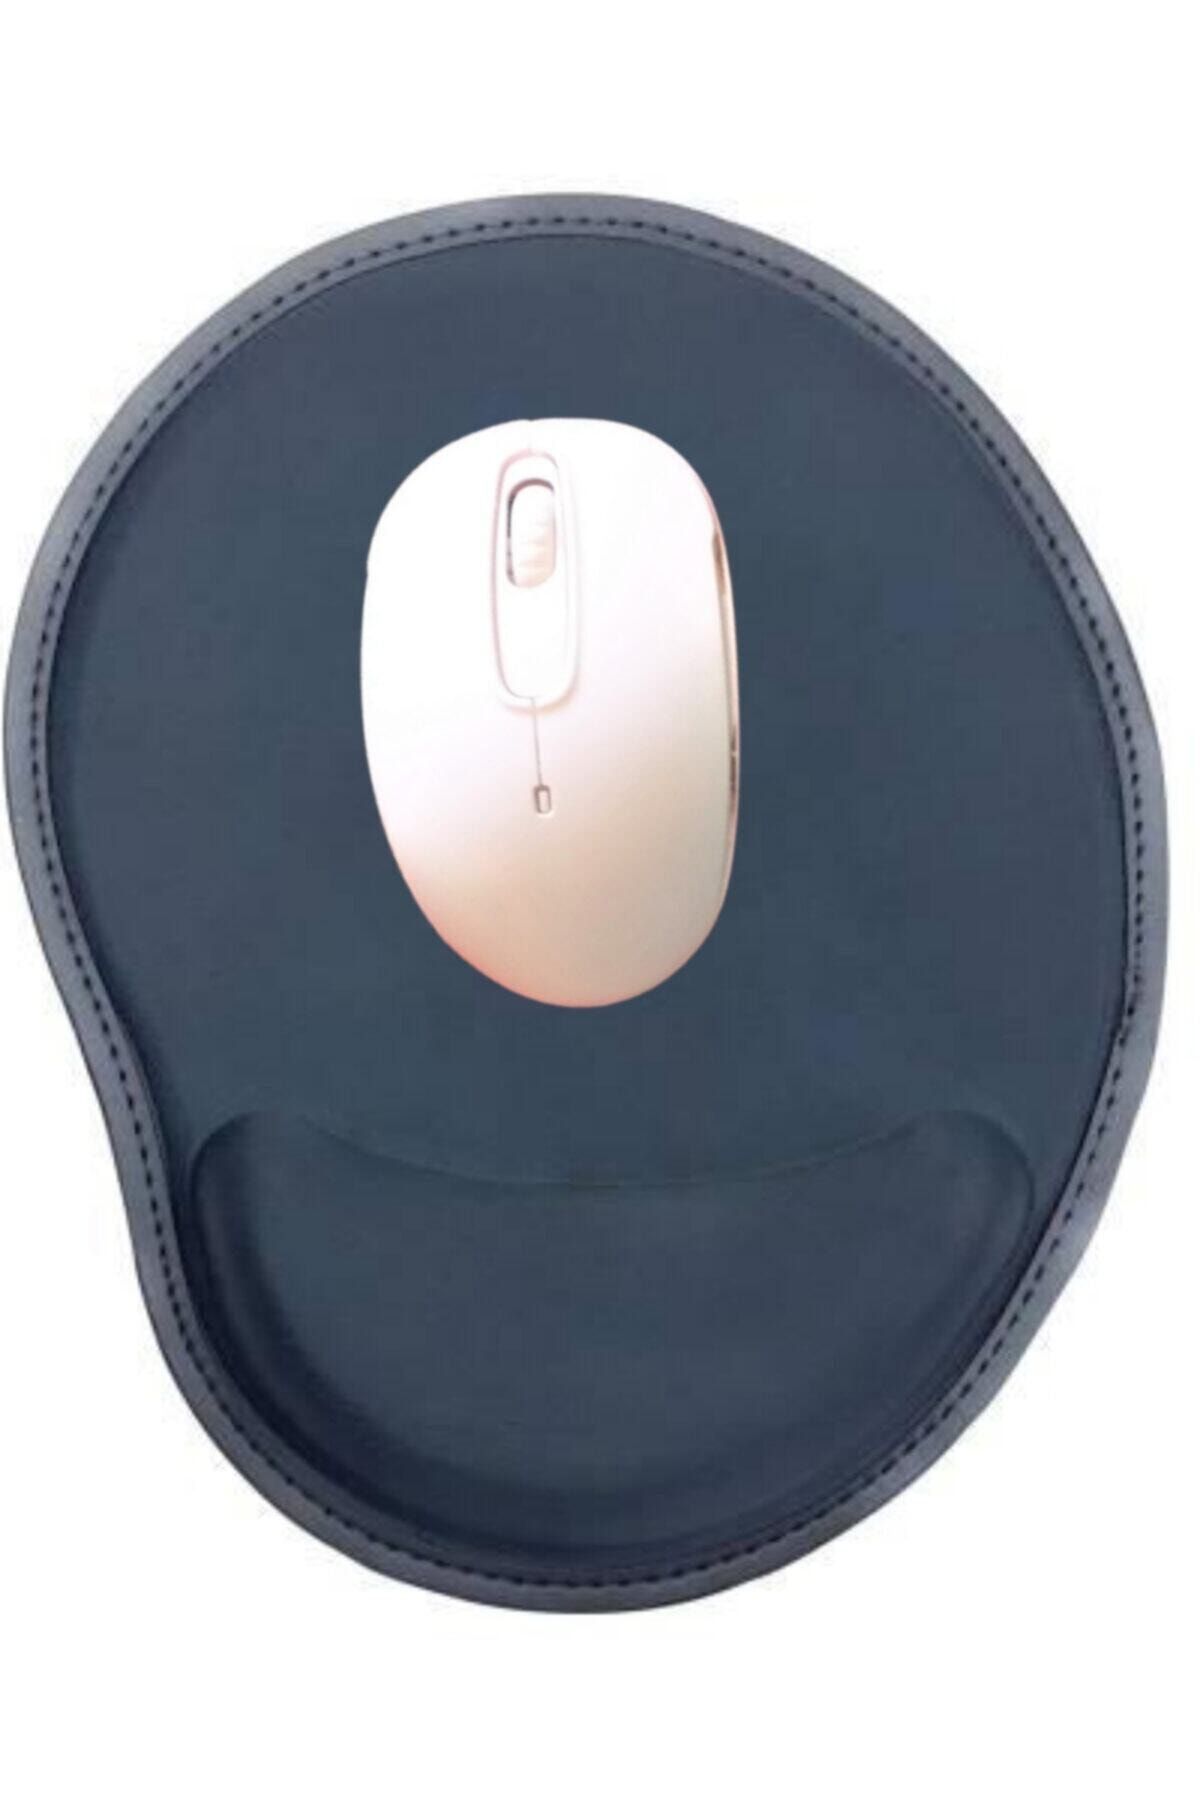 Ankaflex Bilek Destekli Kaliteli Mouse Pad-ofis Oyun Için Mousepad-kaydırmaz Siyah Fare Altlığı